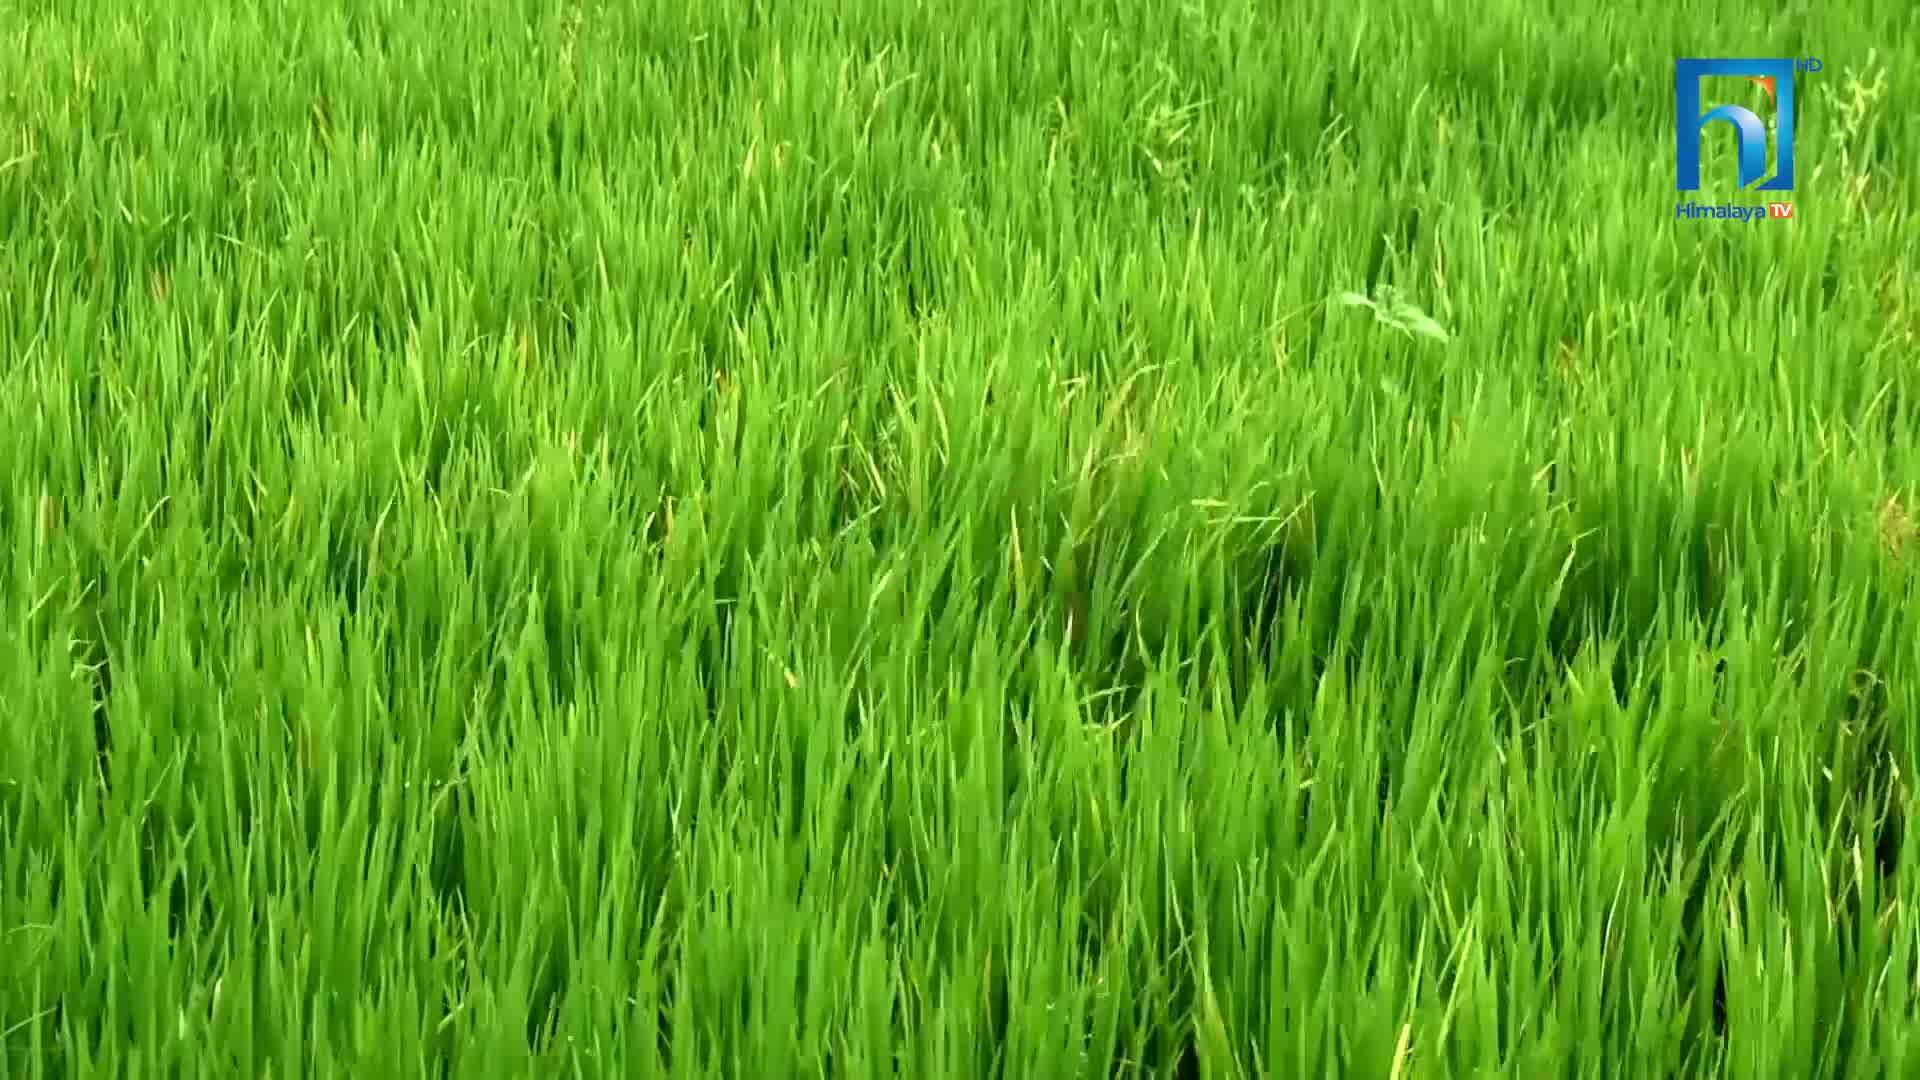 धानमा डढुवा र गवारोको प्रकोप, मोरङका किसान उत्पादन घट्ने चिन्तामा (भिडियोसहित)